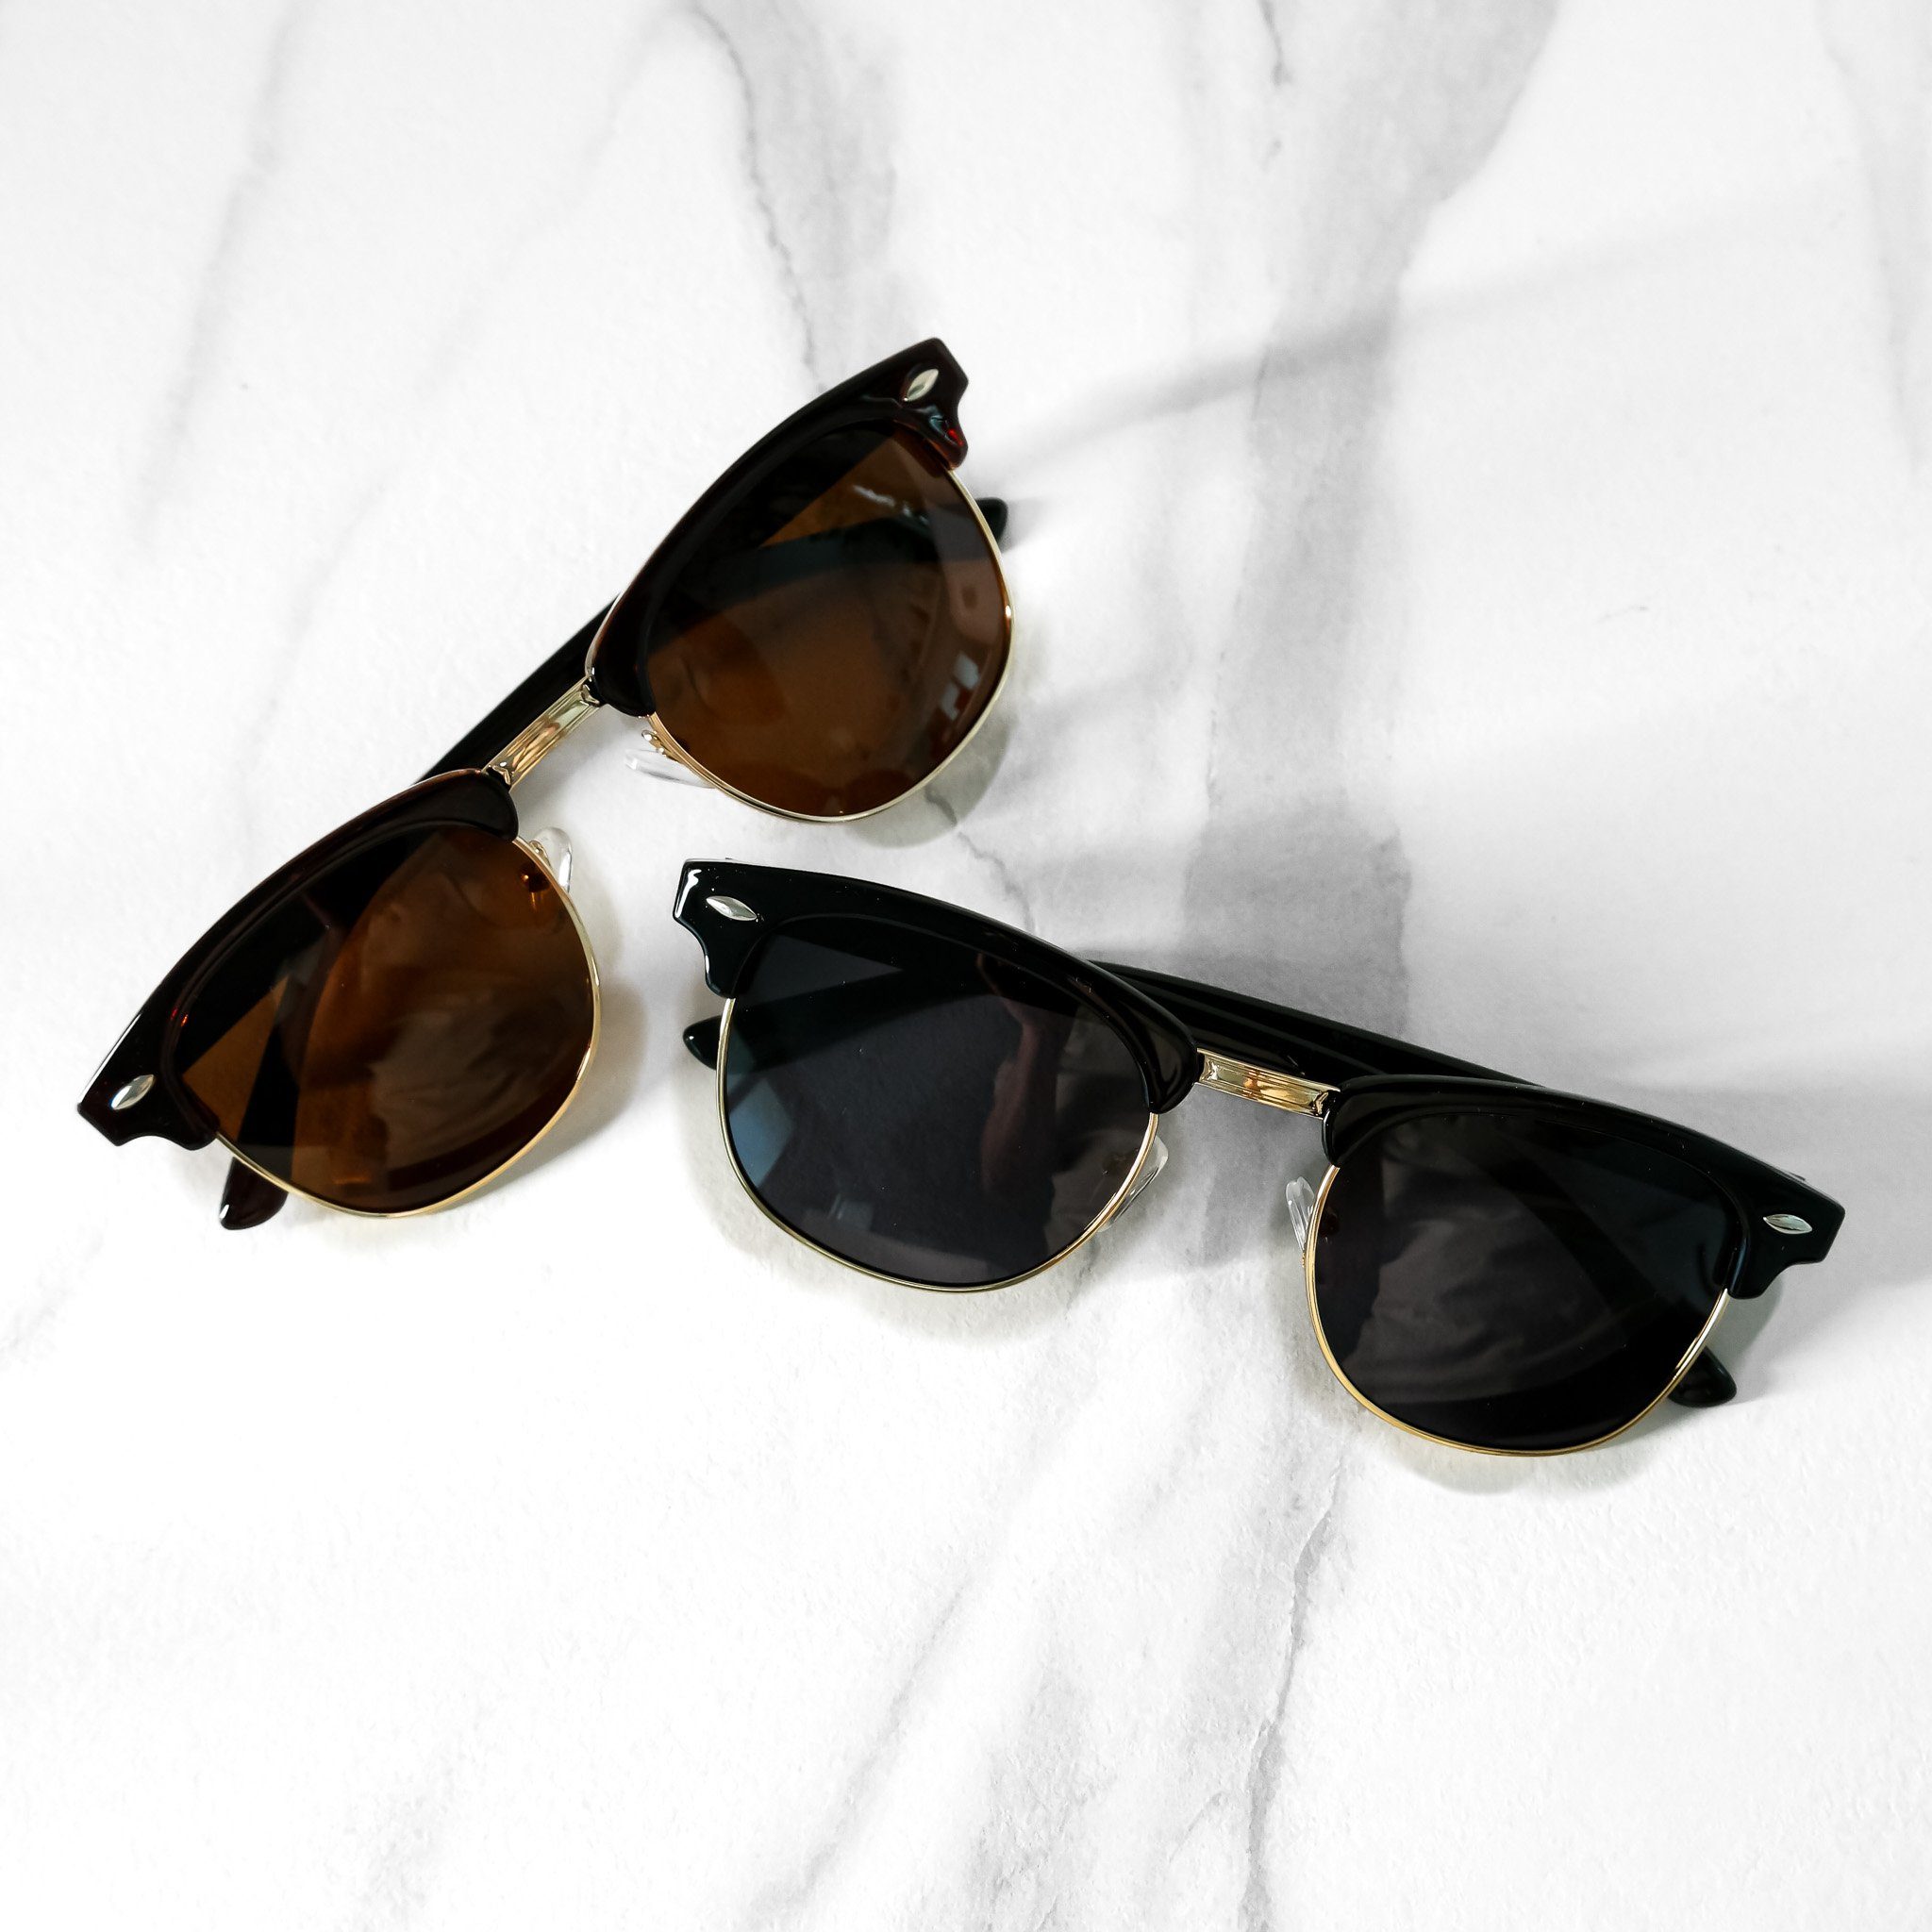 2 Schwarz Damen Farben Brille Unisex Rund Sonnenbrille salazar.plus Braun Rechteckig Herren